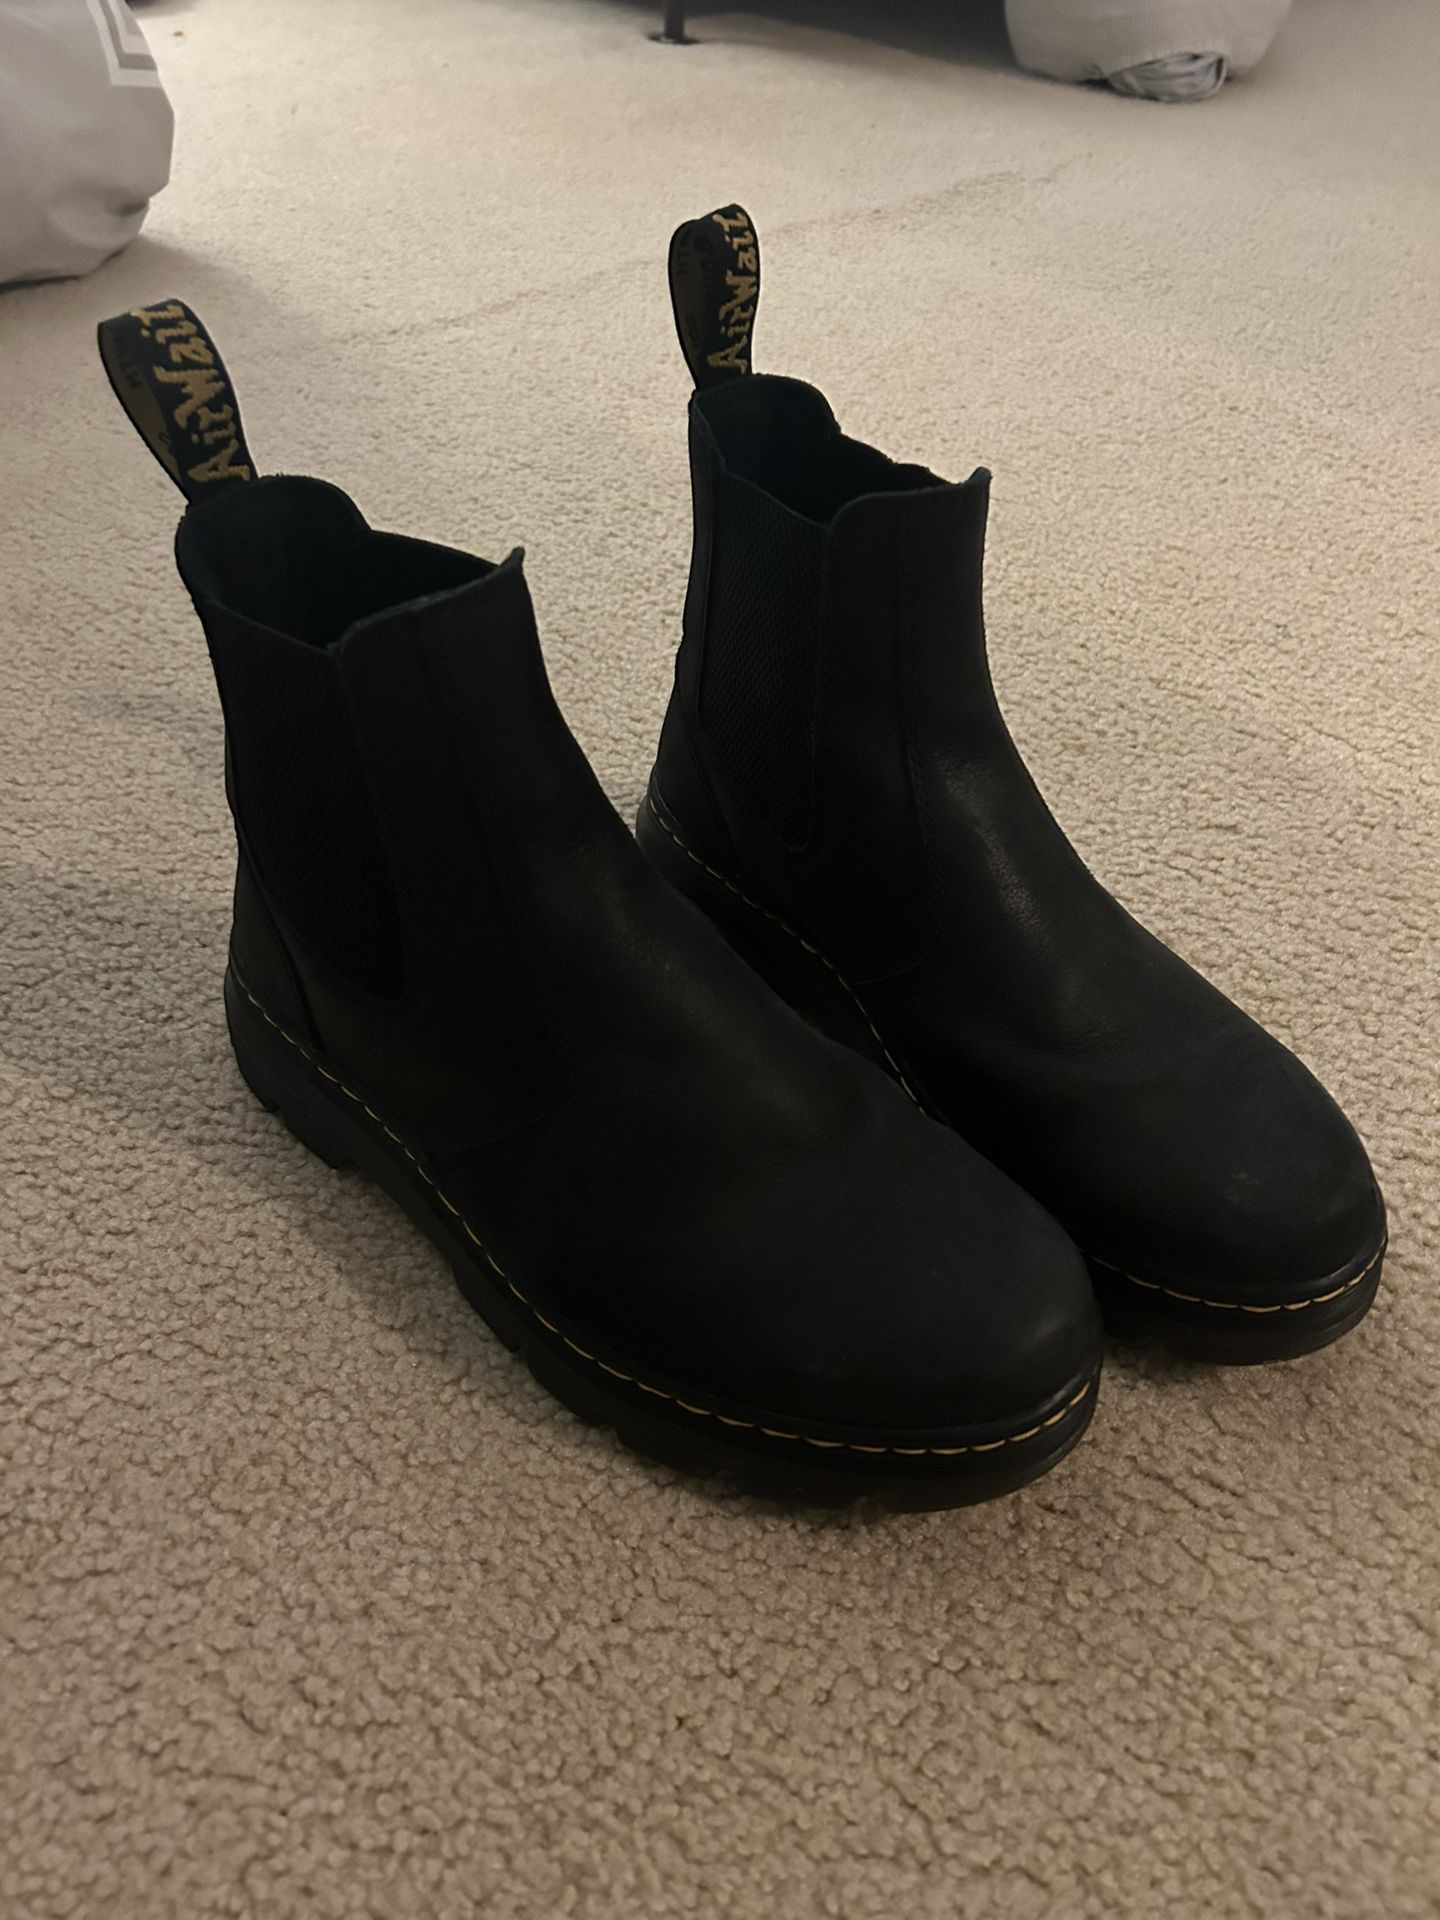 De Martens Chelsea Boots Size 11